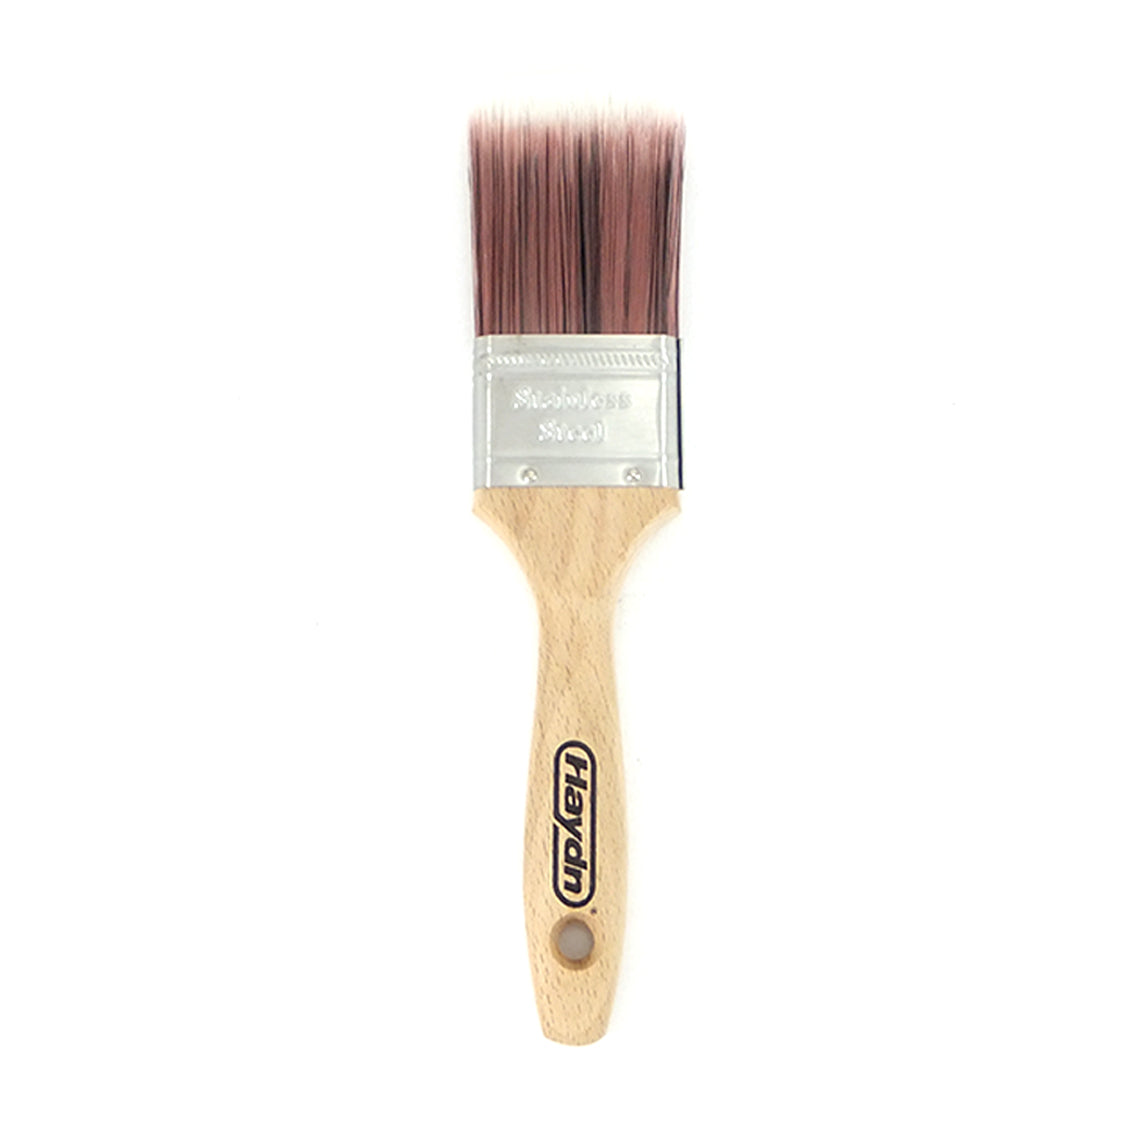 Excalibur Paint Brush